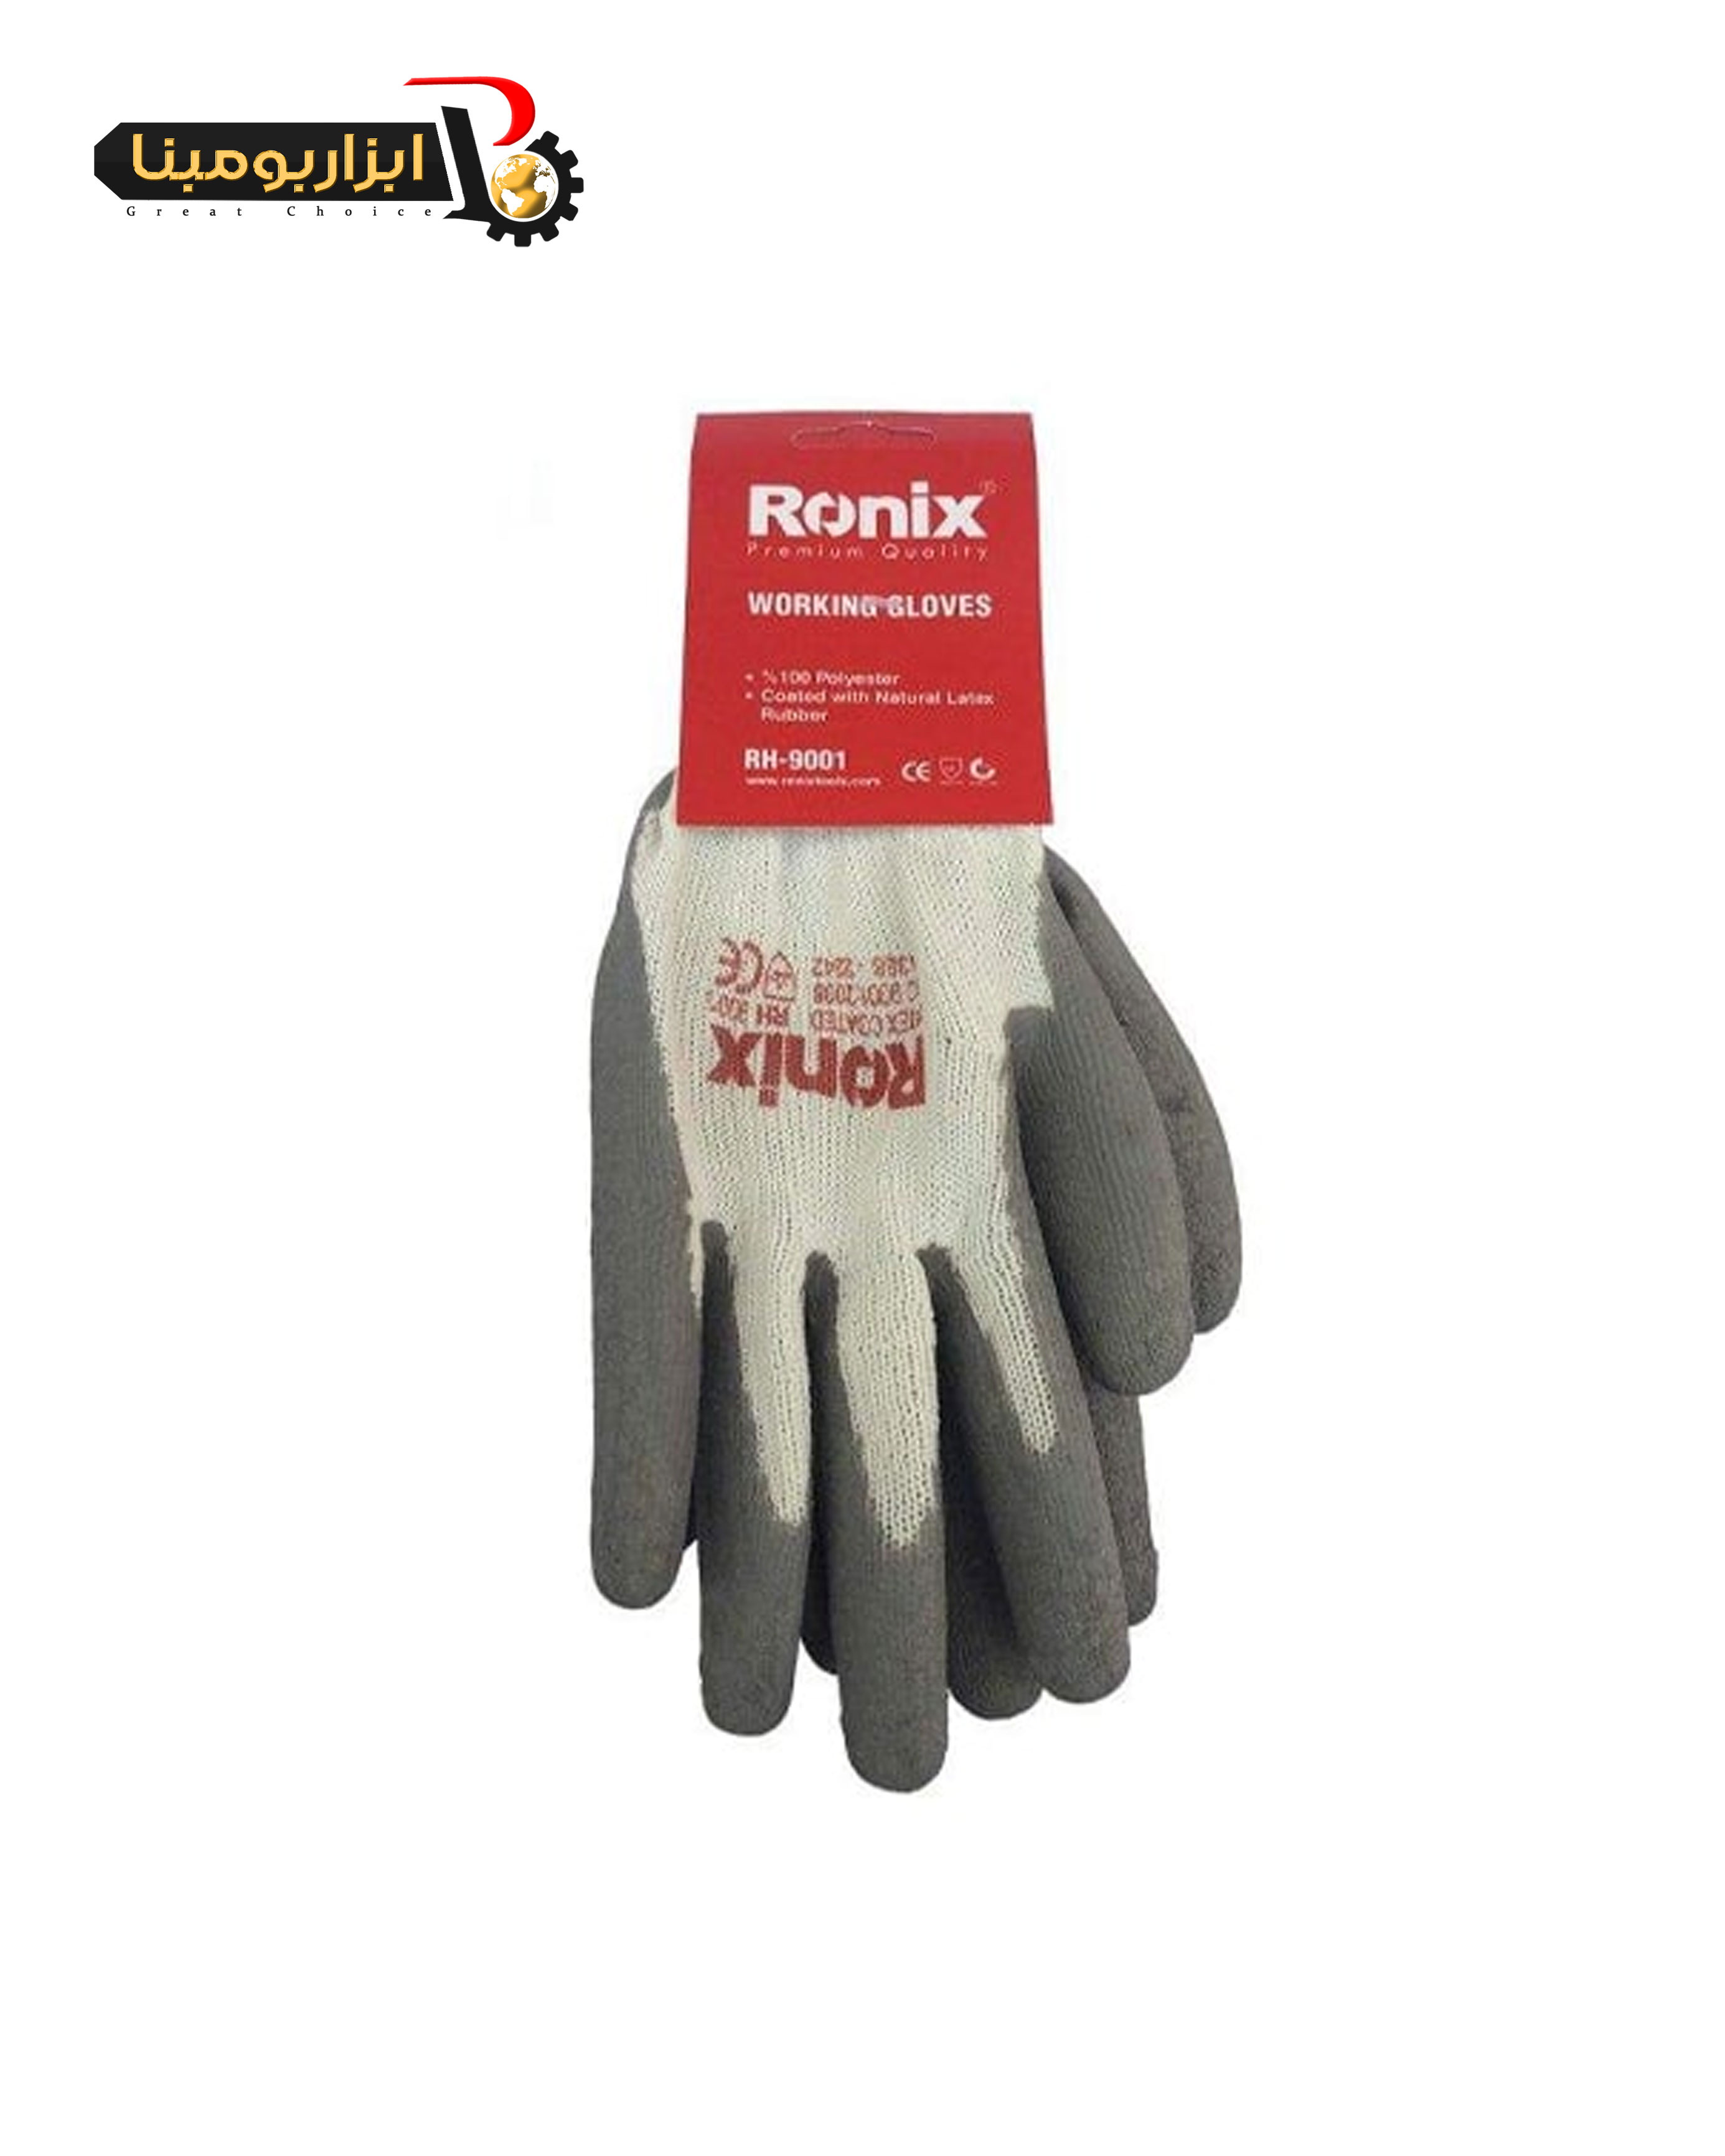 دستکش کار رونیکس لاتکس مدل RH-9001